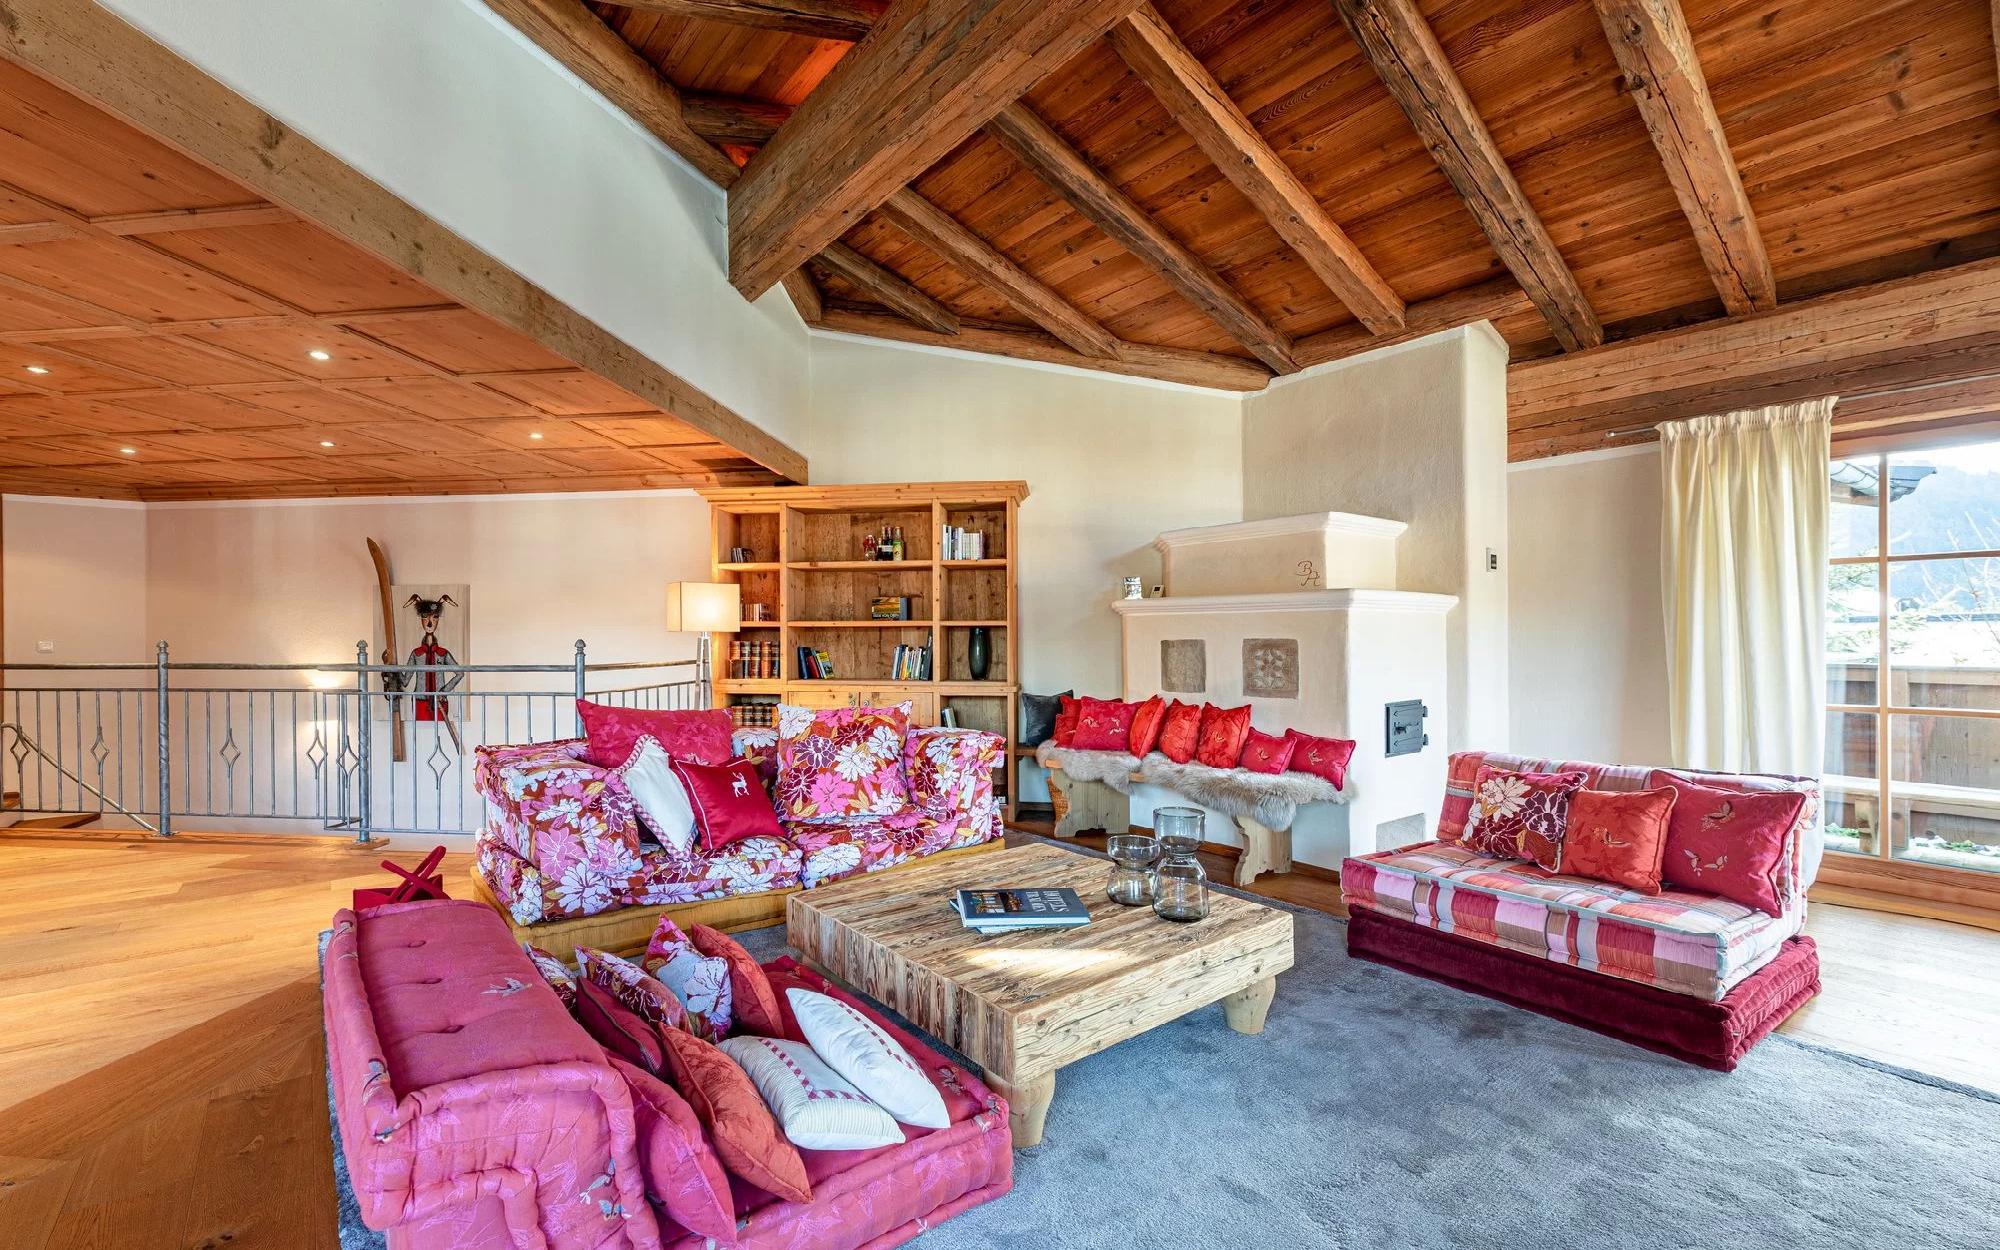 Excellent apartment near ski slopes in Ellmau for Sale - Tirol - Austria